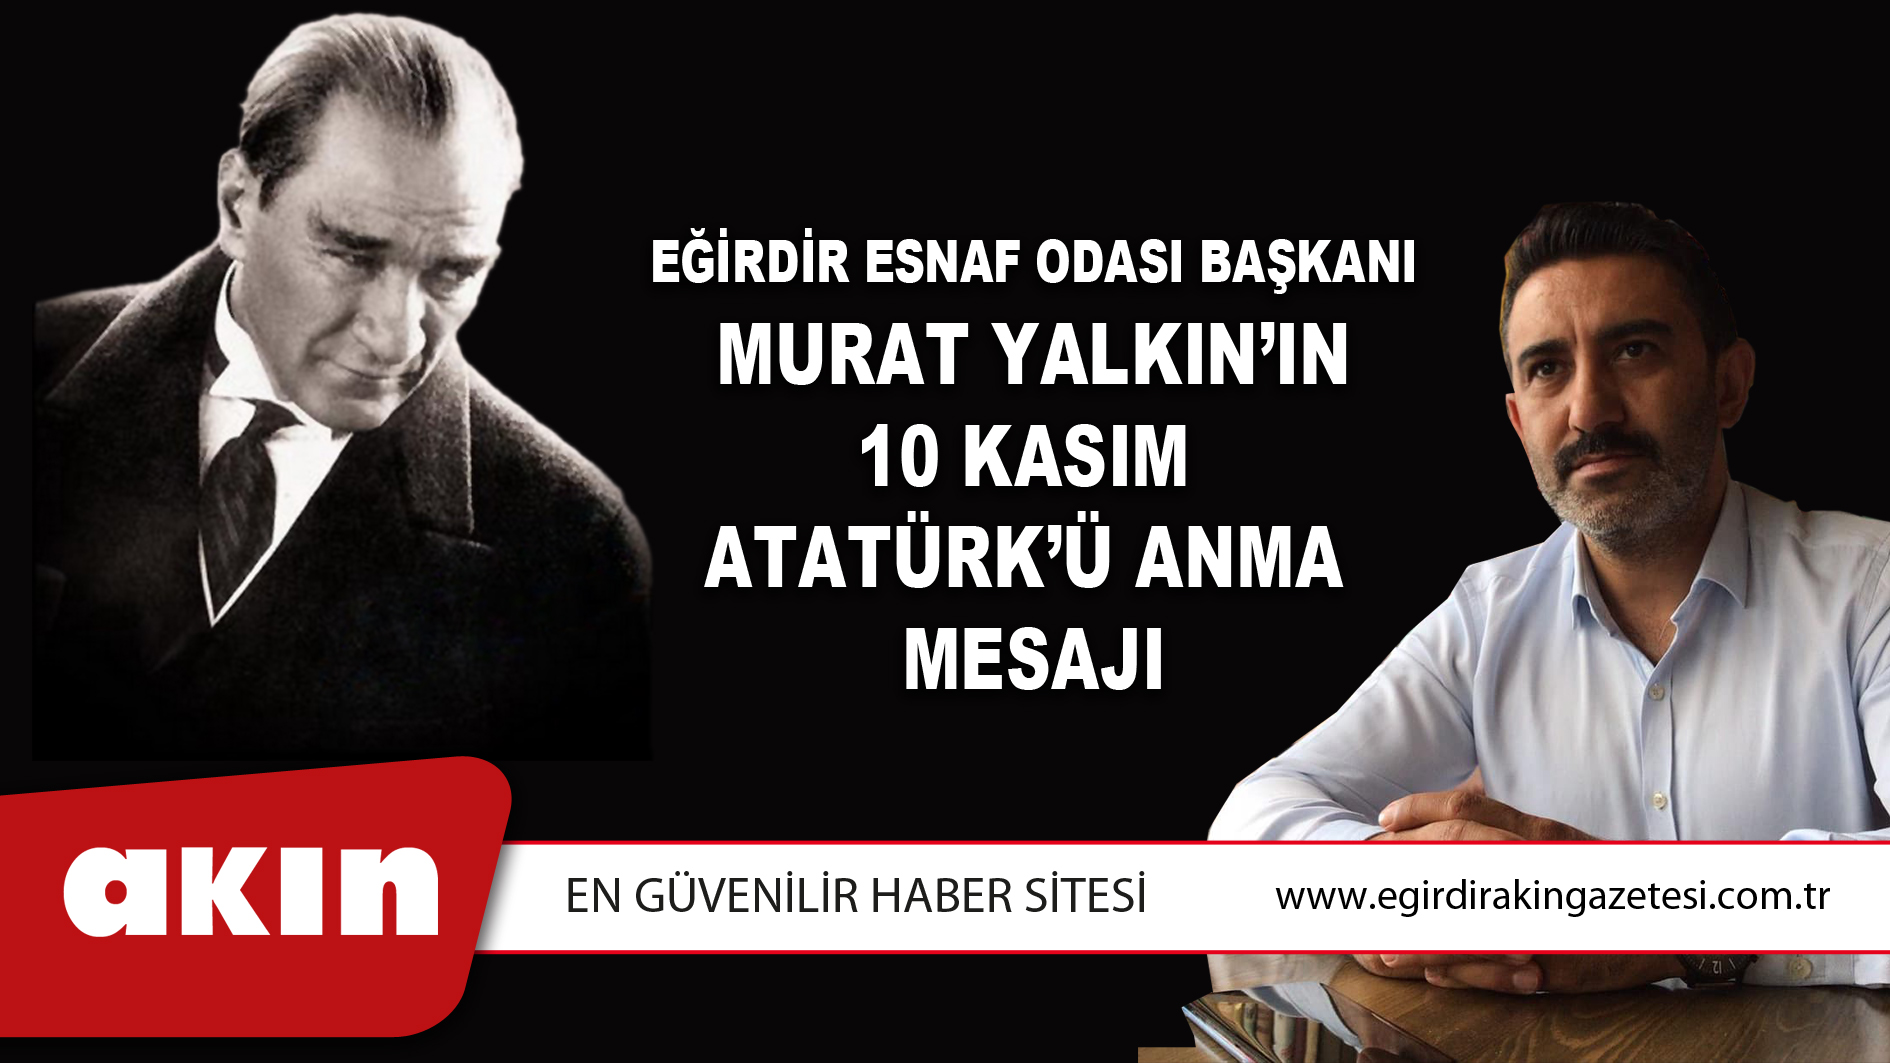 Eğirdir Esnaf Odası Başkanı Murat Yalkın’ın 10 Kasım Atatürk’ü Anma  Mesajı 